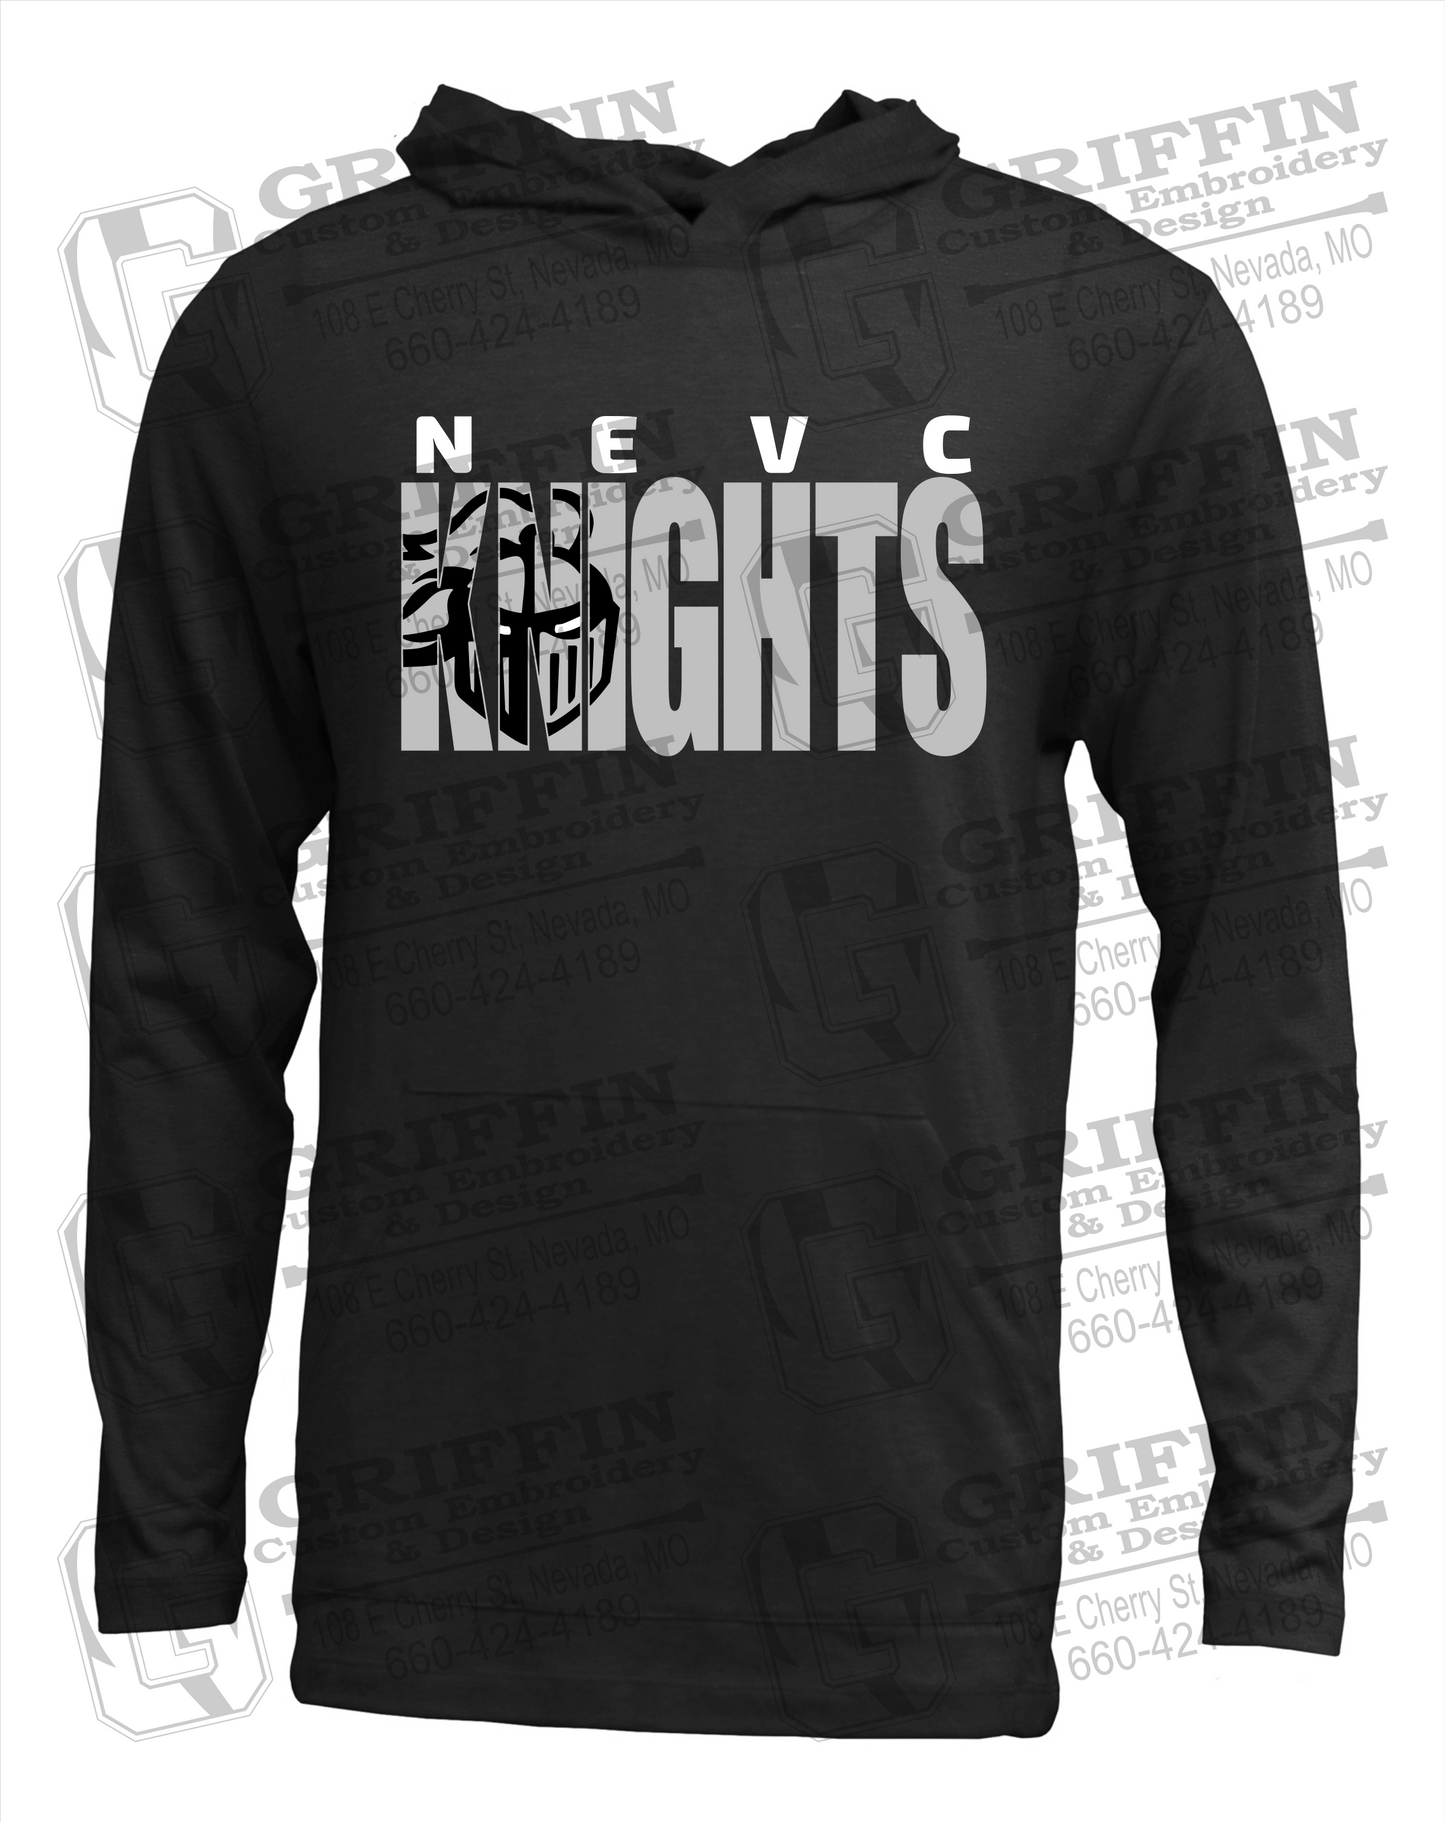 NEVC Knights 23-B T-Shirt Hoodie